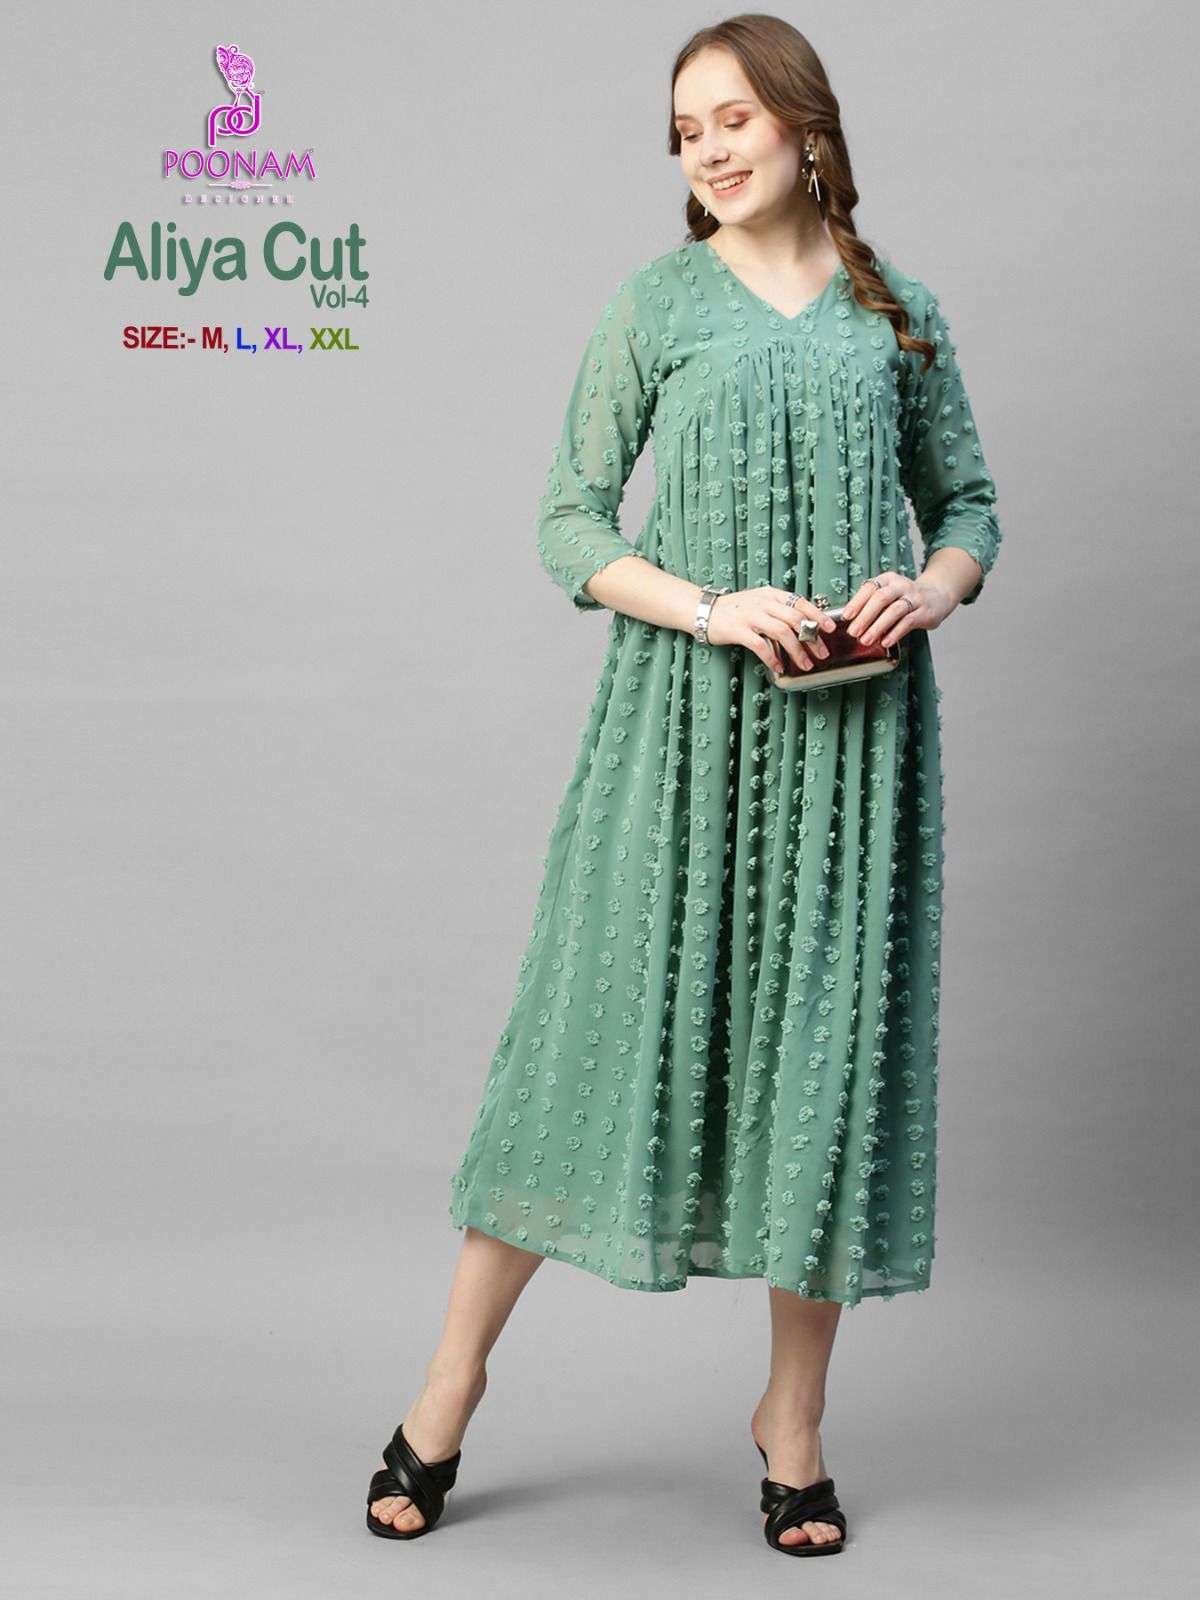 poonam designer aliya cut vol-4 1001-1006 series georgette butti fabric aliya cut gown catalogue design 2023